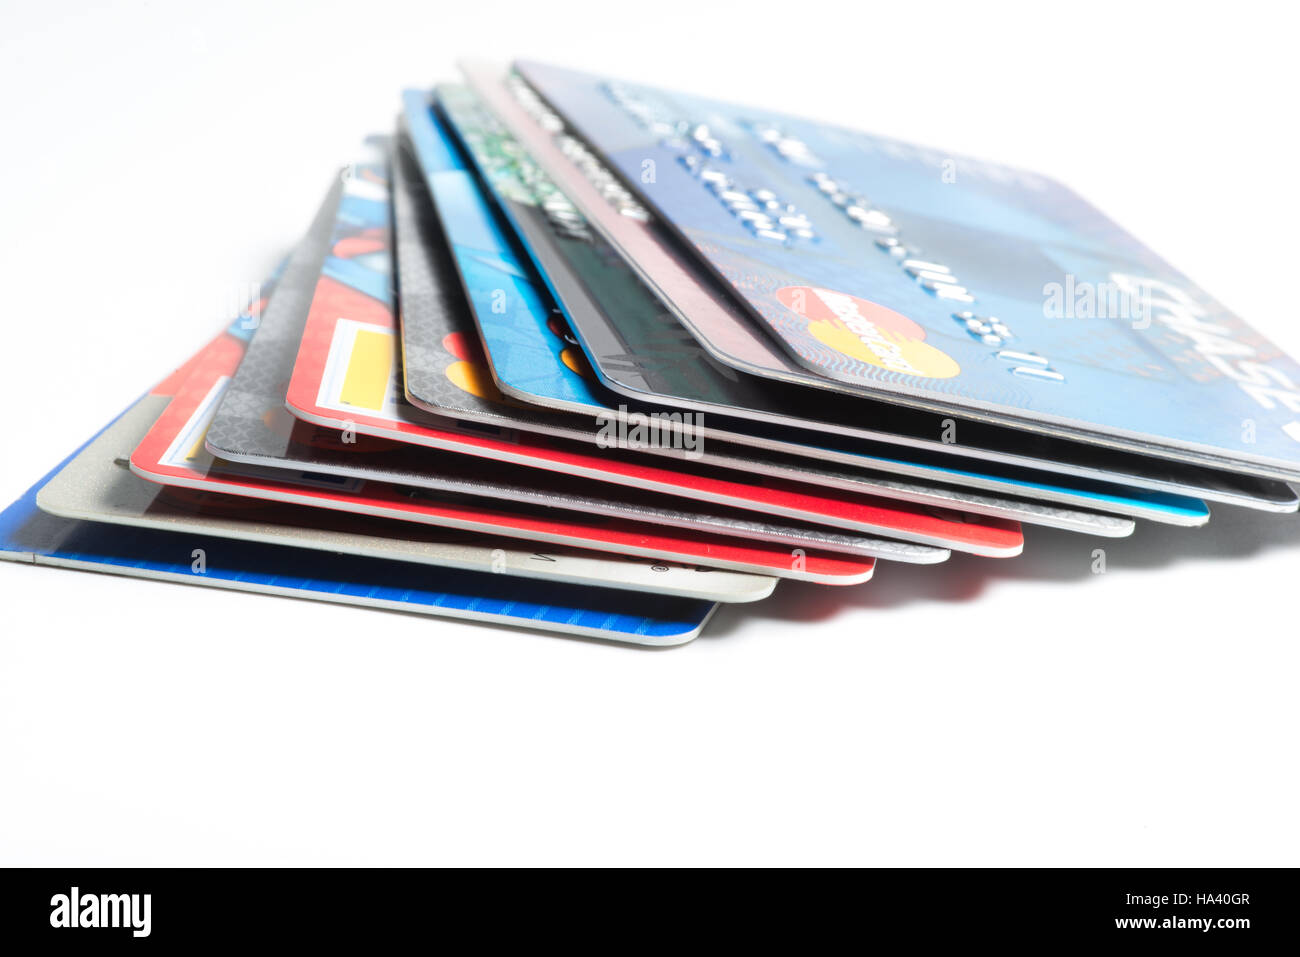 Pile de cartes de crédit avec MasterCard, American Express et Visa logos sur fond blanc(pour un usage éditorial uniquement) Banque D'Images